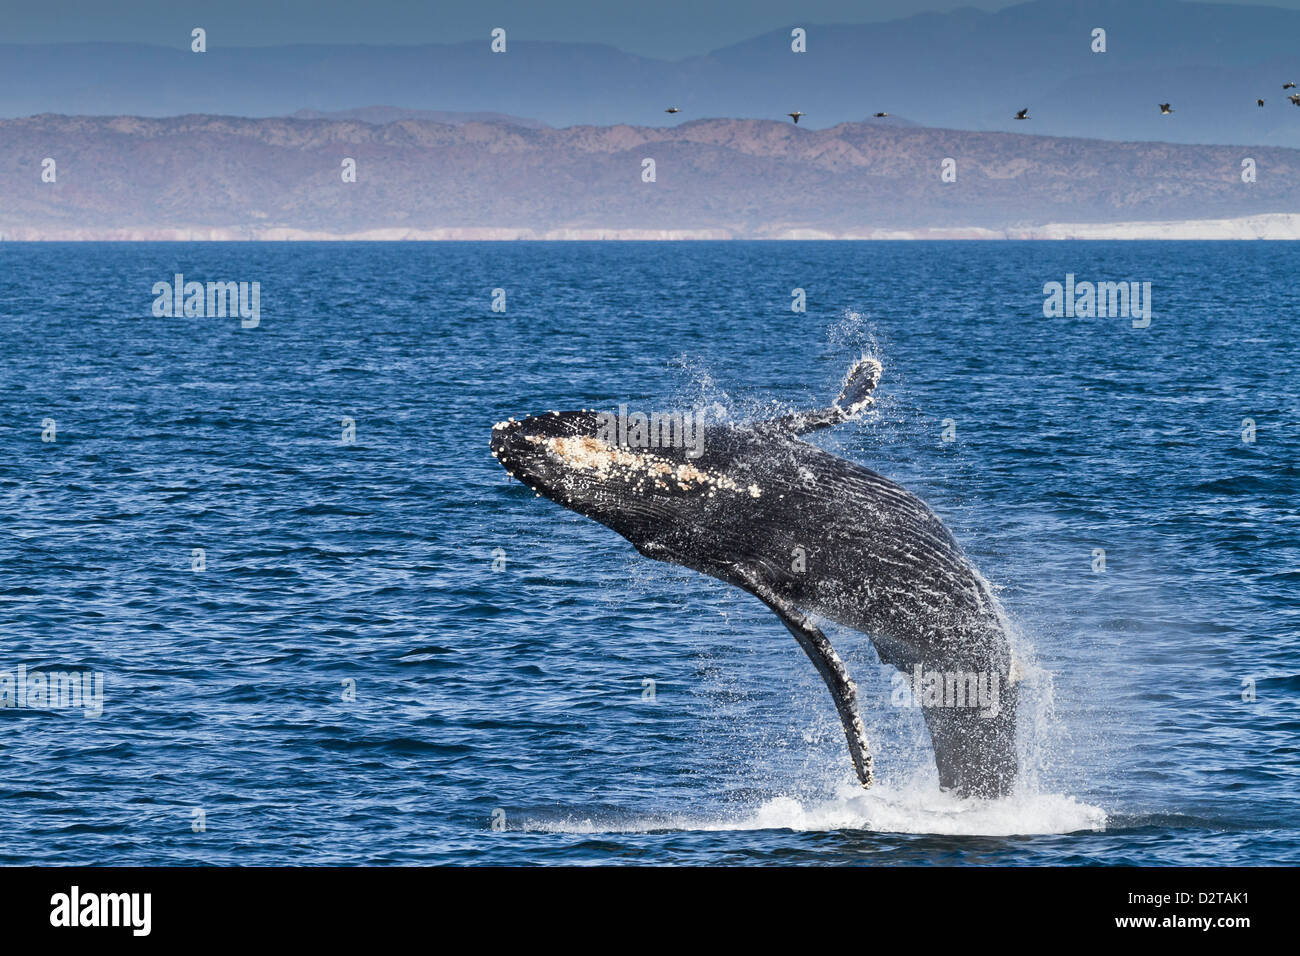 Humpback whale (Megaptera novaeangliae) breach, Gulf of California (Sea of Cortez), Baja California Sur, Mexico, North America Stock Photo